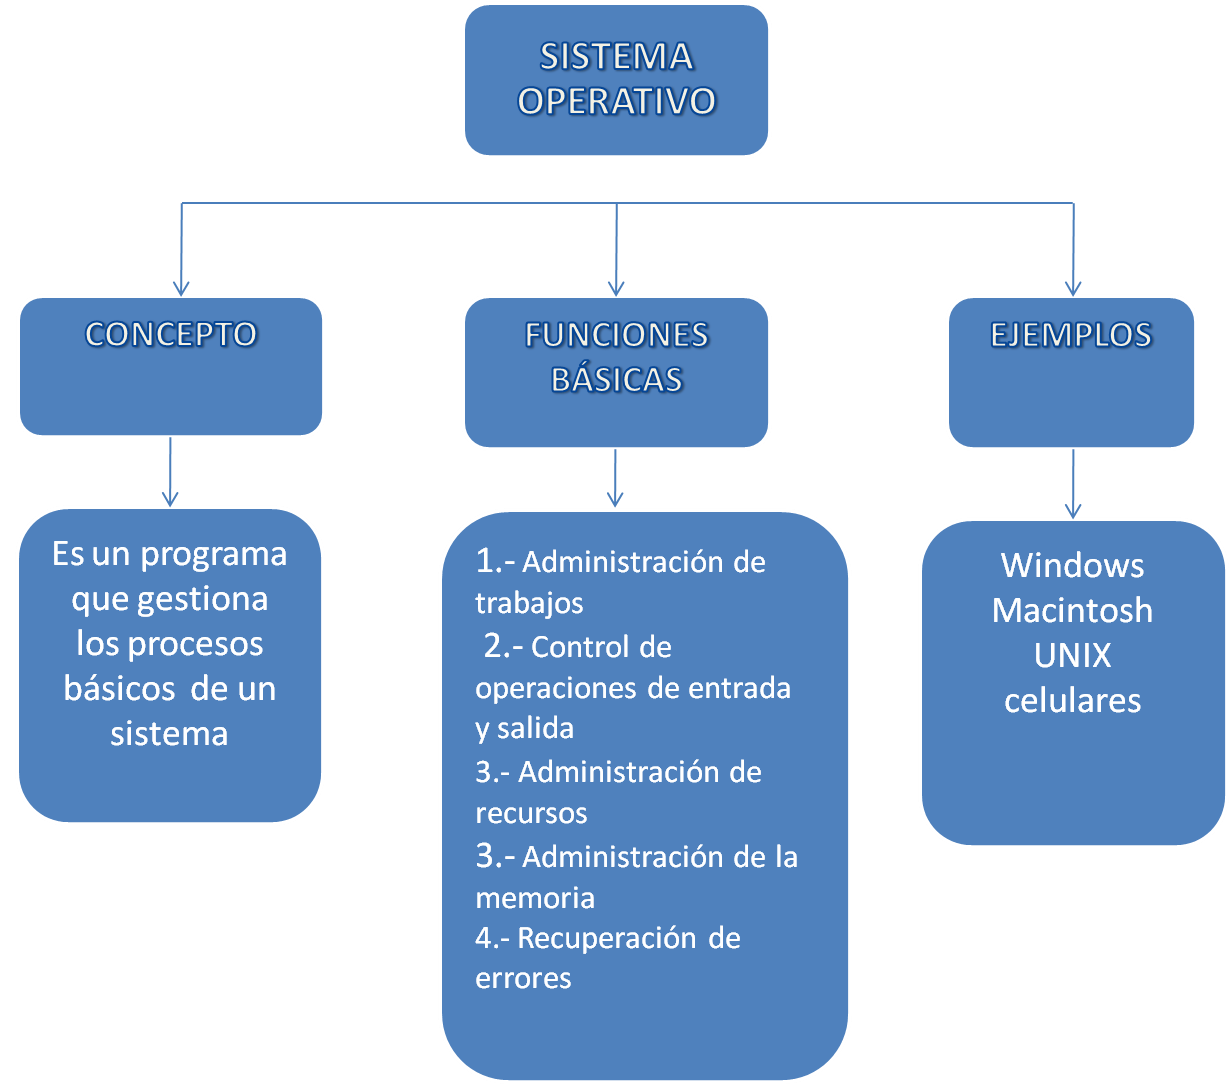 Portafolio De Infopedagogia Clasificacion Del Software Y El Sistema